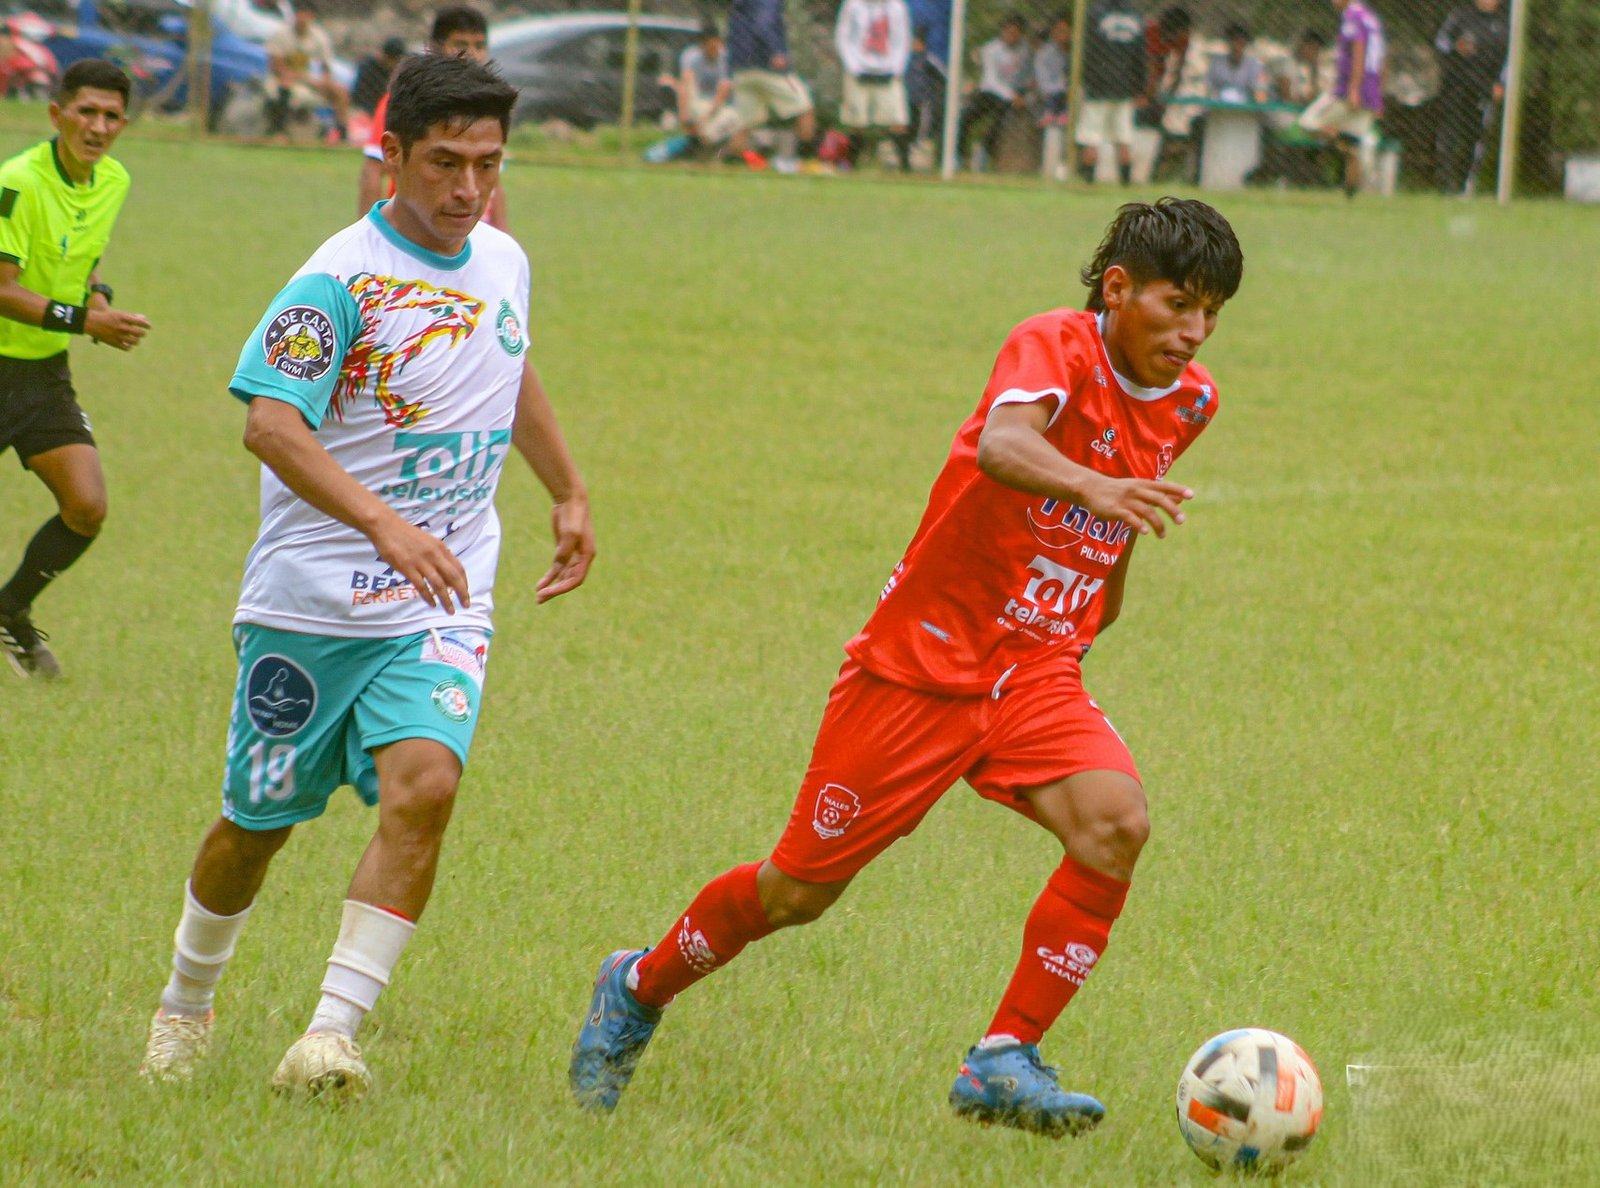 El líder de la Copa Perú en Pillco marca, Deportivo Pujay, ya aseguro su pase a la liguilla